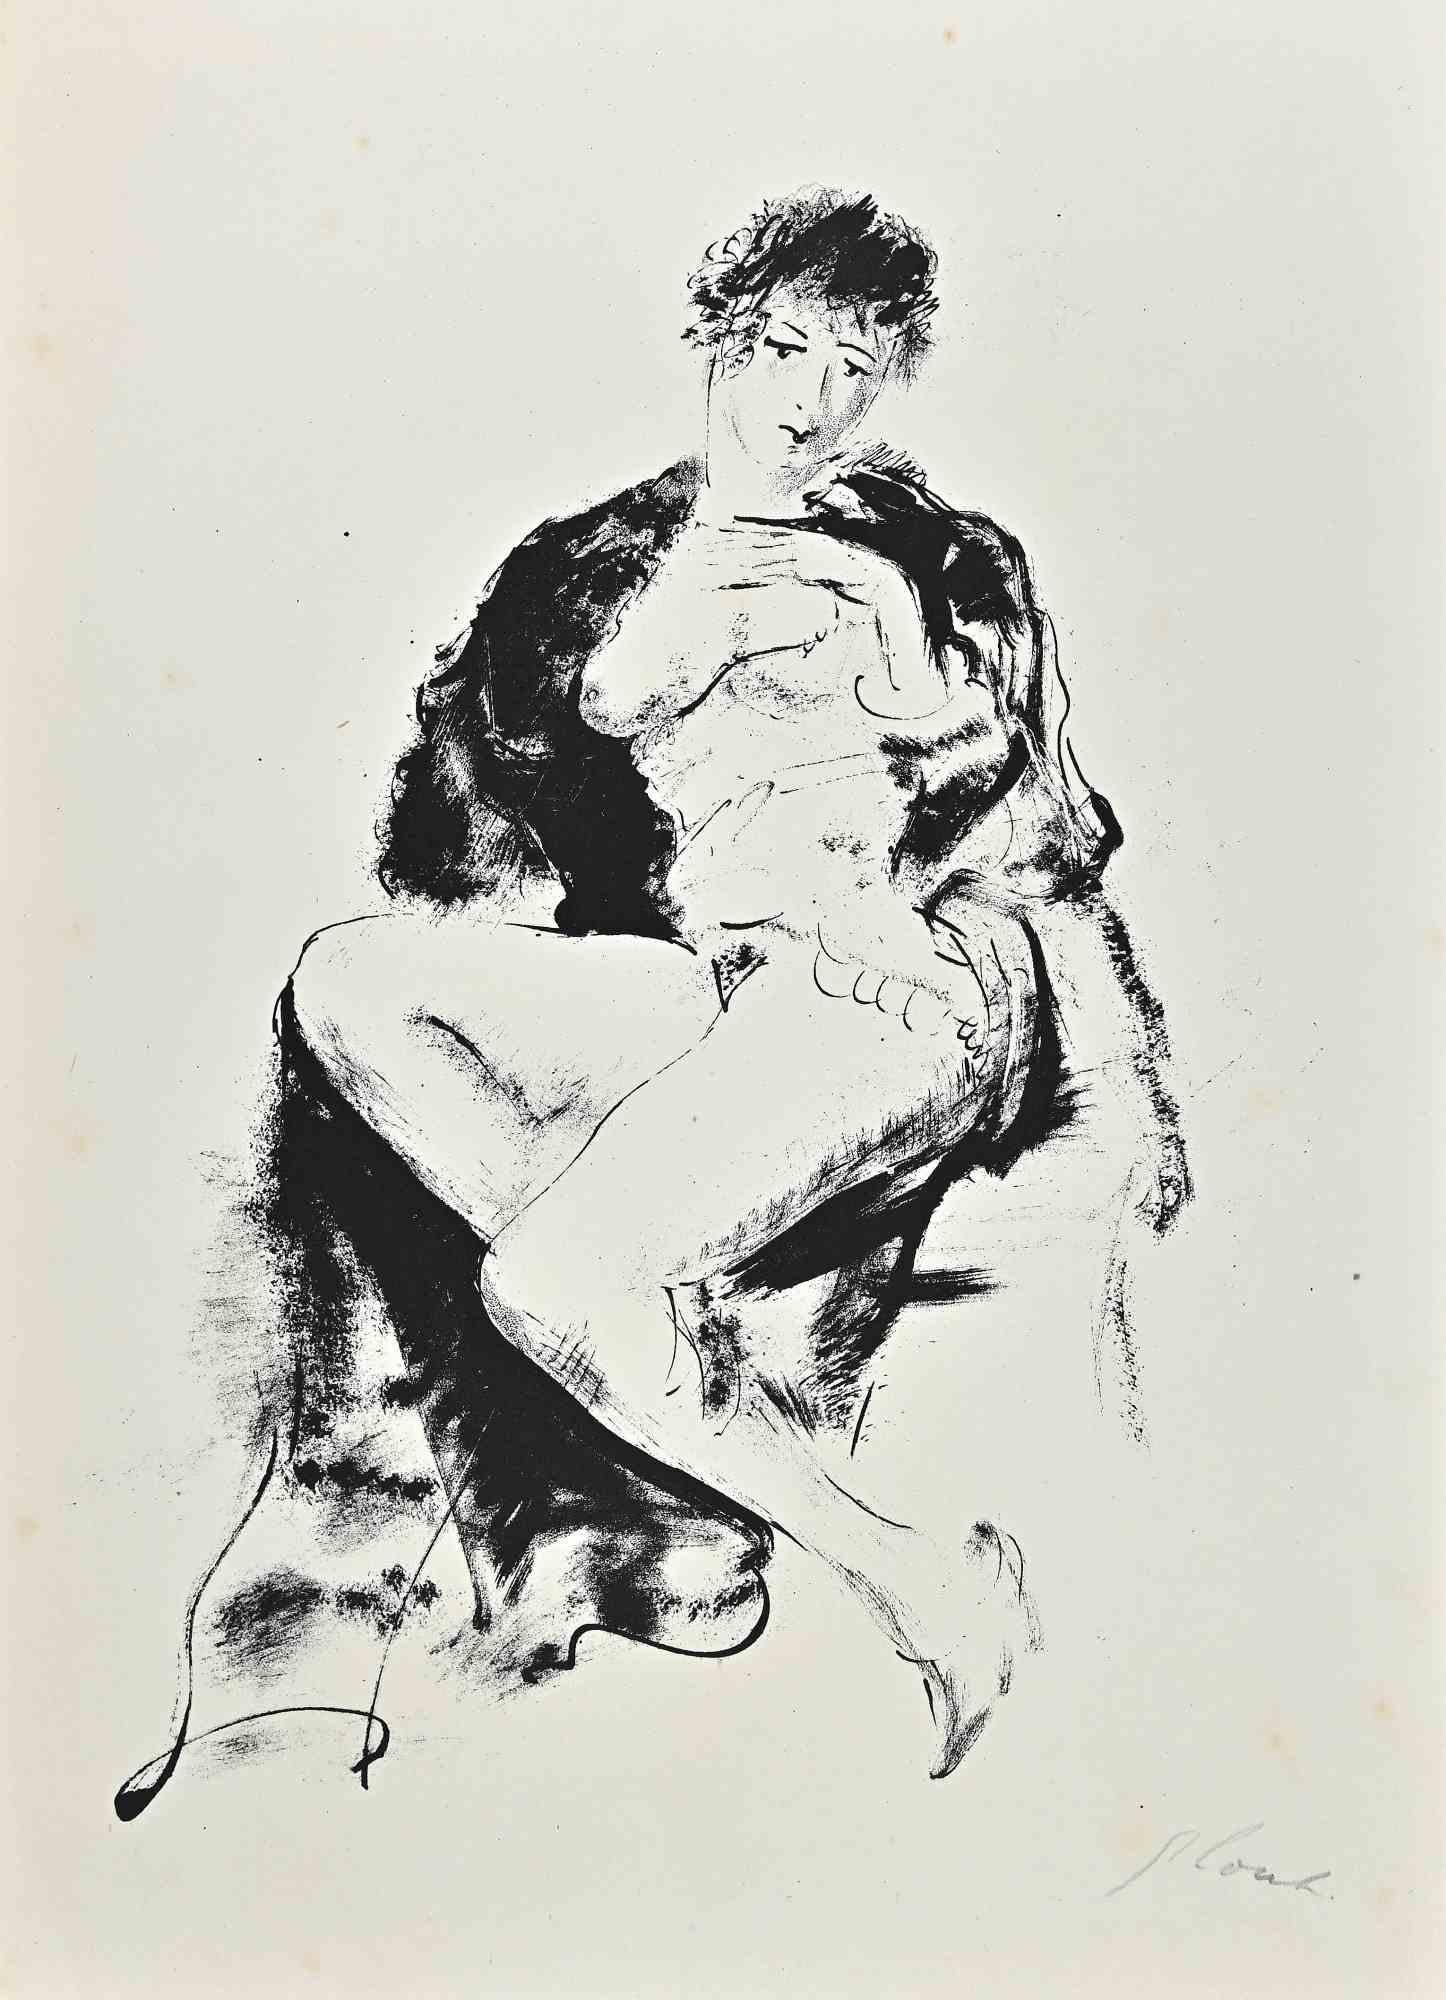 Der weibliche Akt ist ein Kunstwerk von Nicolas Gloutchenko aus dem Jahr 1928.

Lithographie auf Japonpapier.

Handsigniert mit Bleistift vom Künstler am unteren rechten Rand.

Ausgezeichnete Bedingungen.

Die Lithographie gehört zu der kostbaren